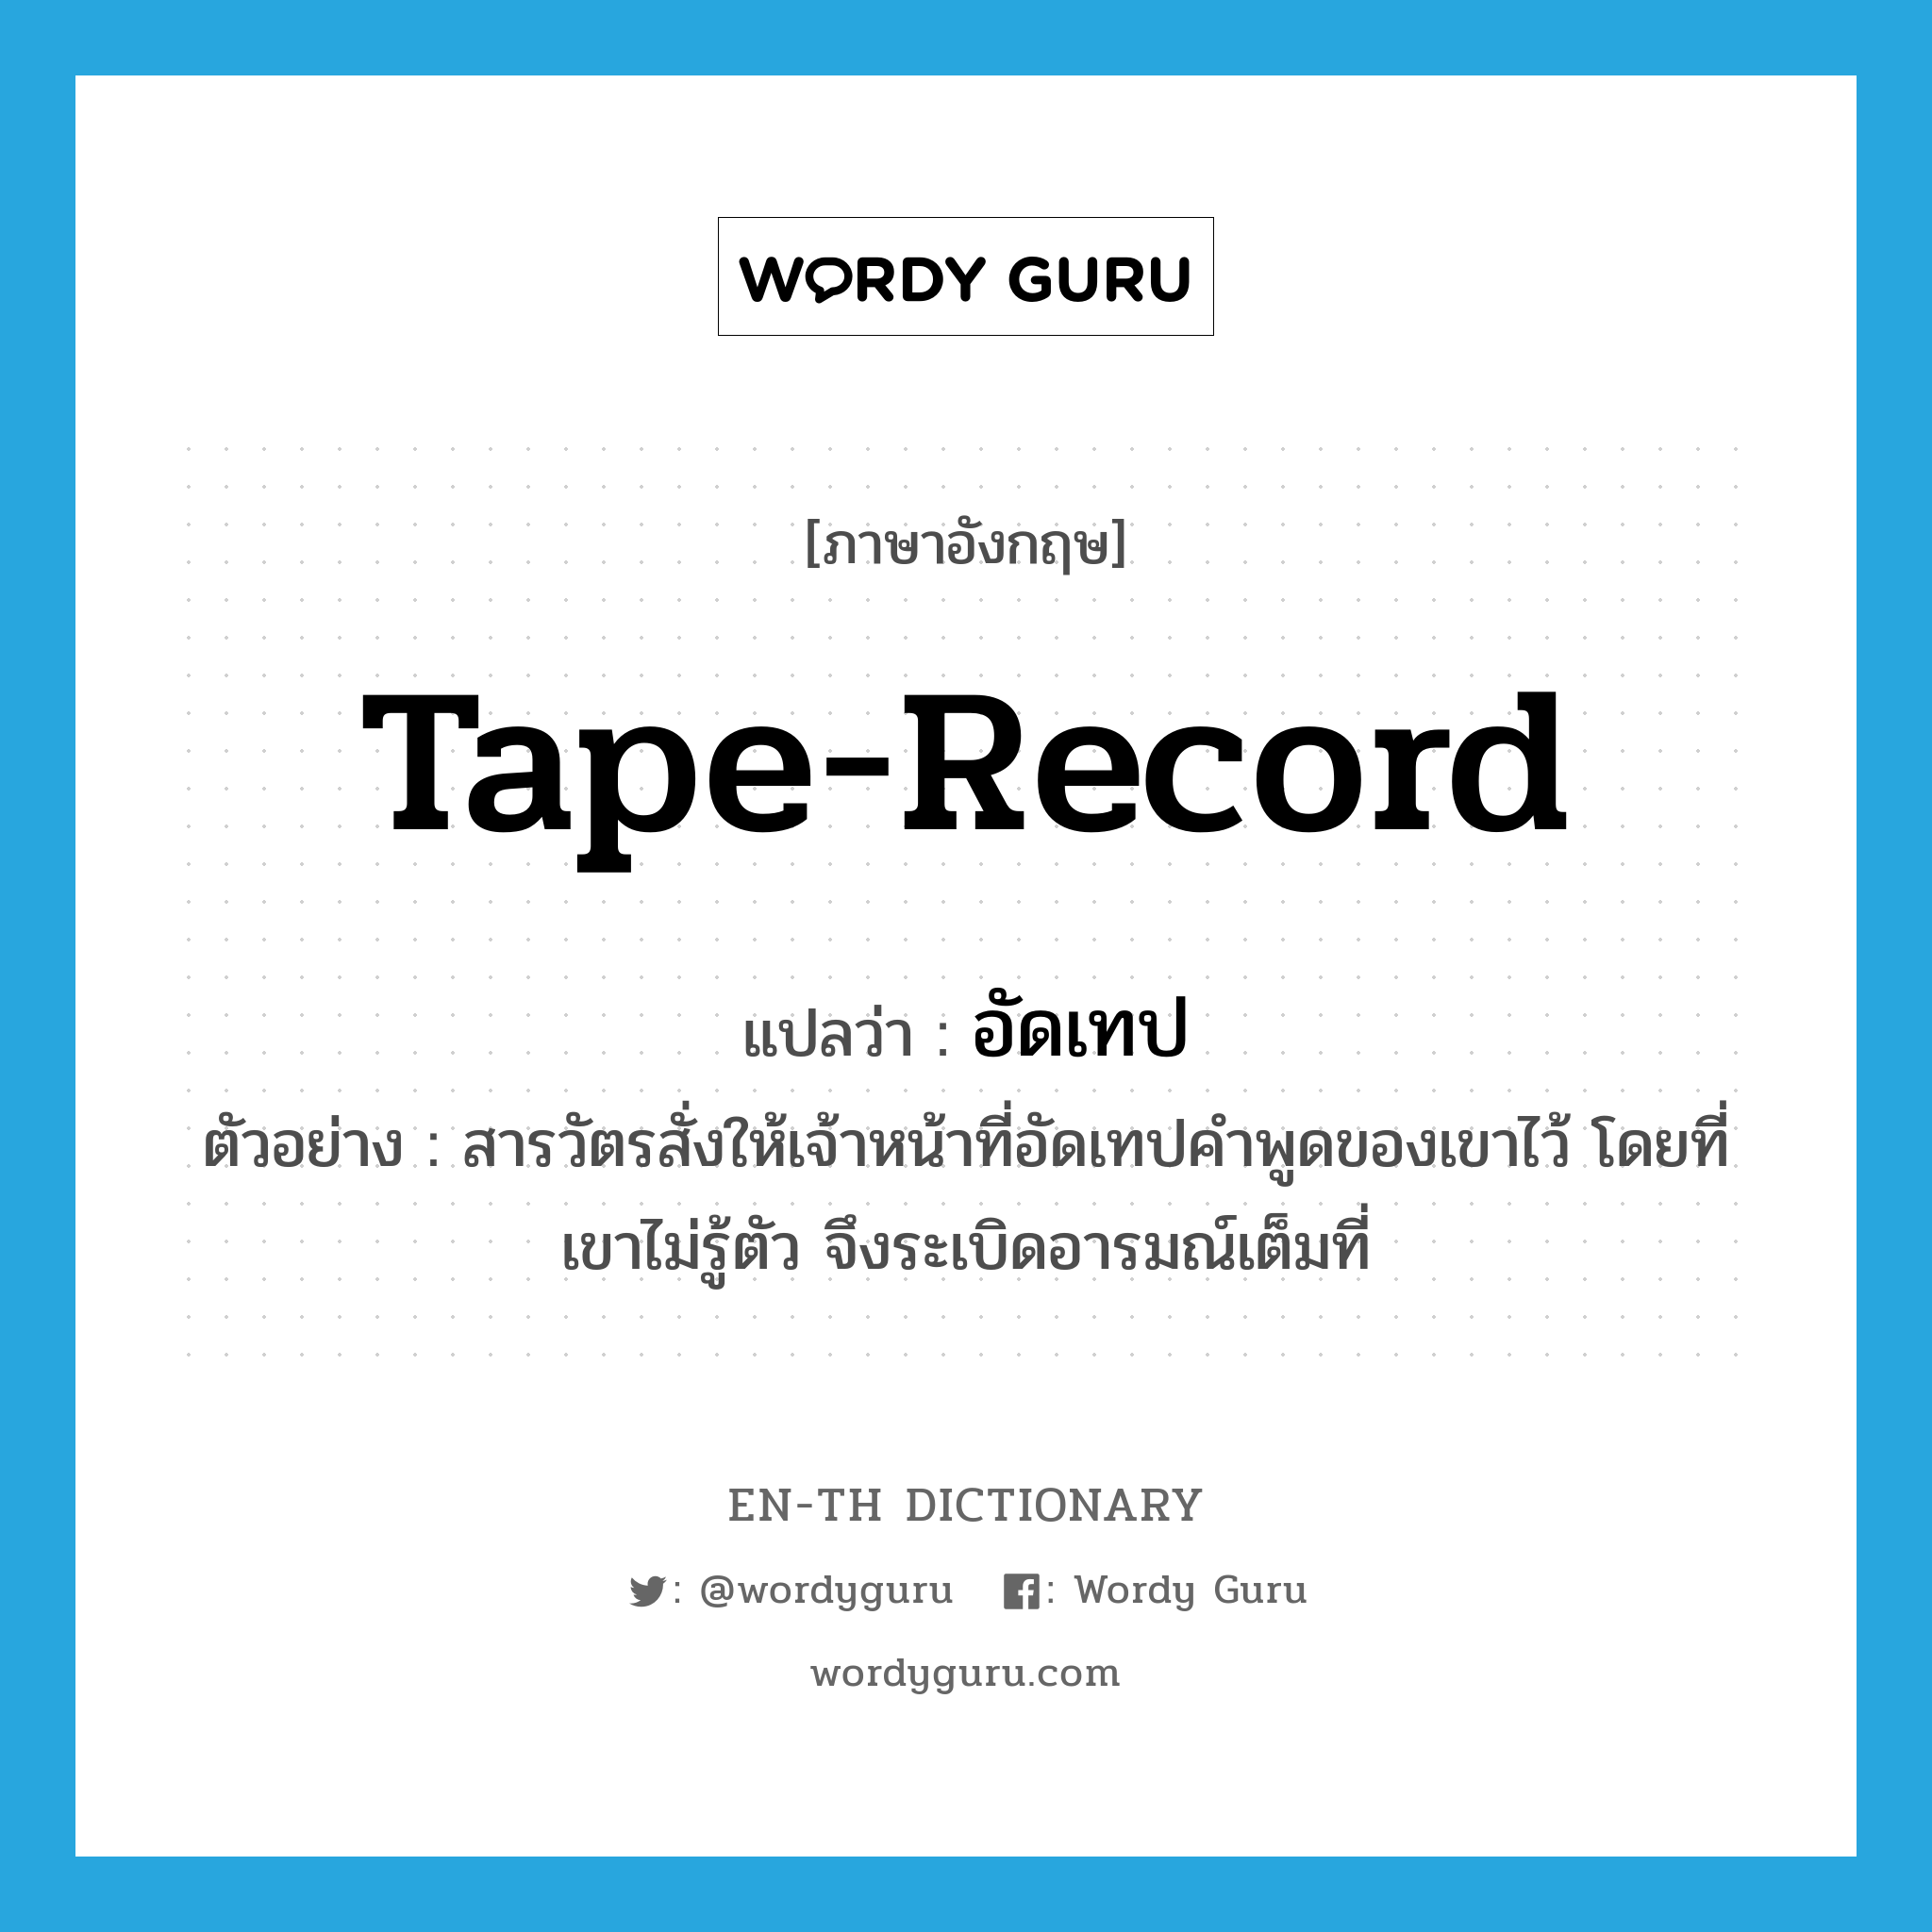 tape-record แปลว่า?, คำศัพท์ภาษาอังกฤษ tape-record แปลว่า อัดเทป ประเภท V ตัวอย่าง สารวัตรสั่งให้เจ้าหน้าที่อัดเทปคำพูดของเขาไว้ โดยที่เขาไม่รู้ตัว จึงระเบิดอารมณ์เต็มที่ หมวด V